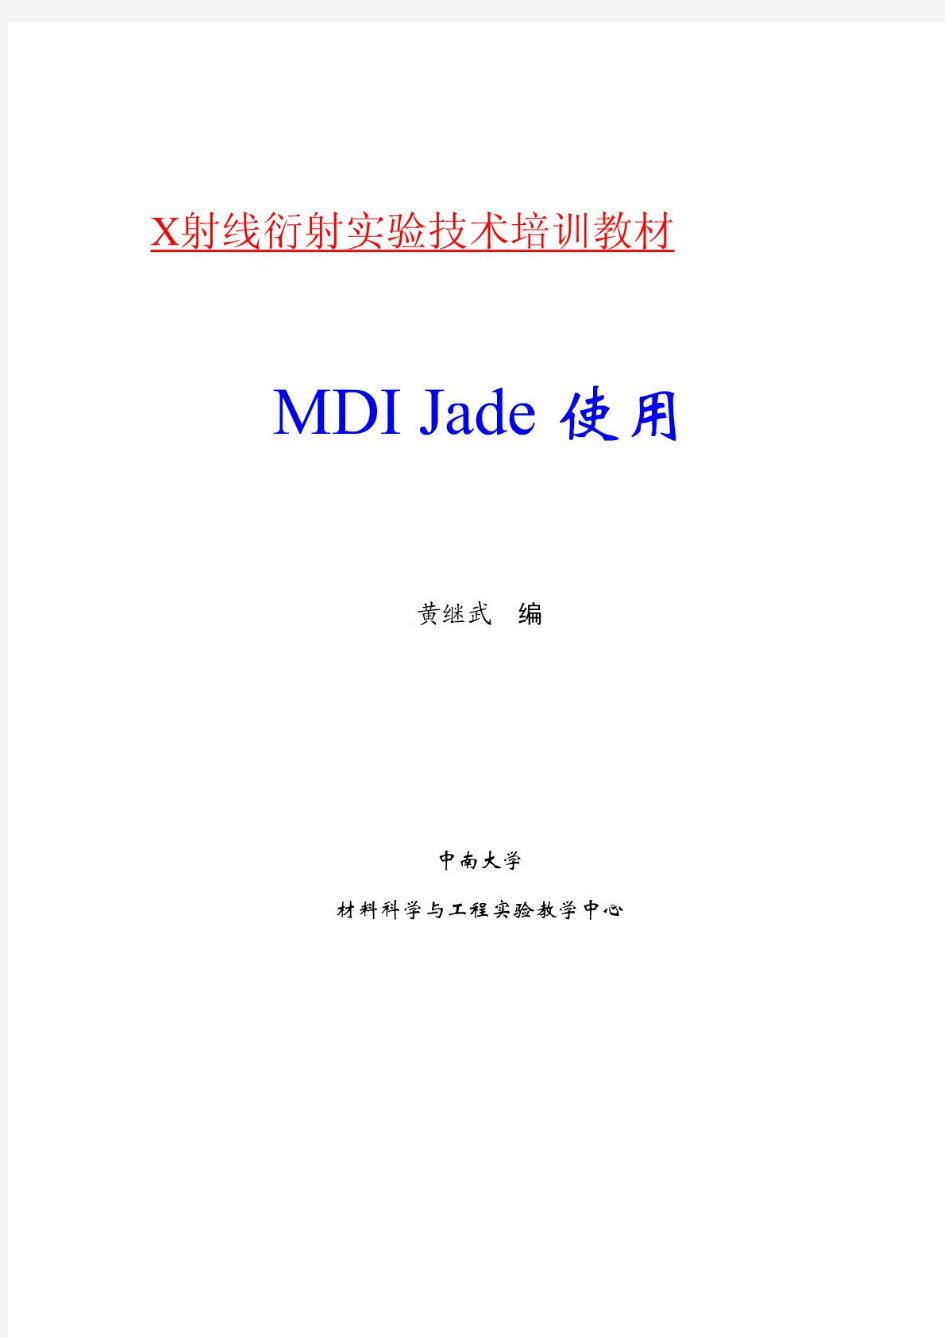 MDI Jade 5.0 使用教程 第四版